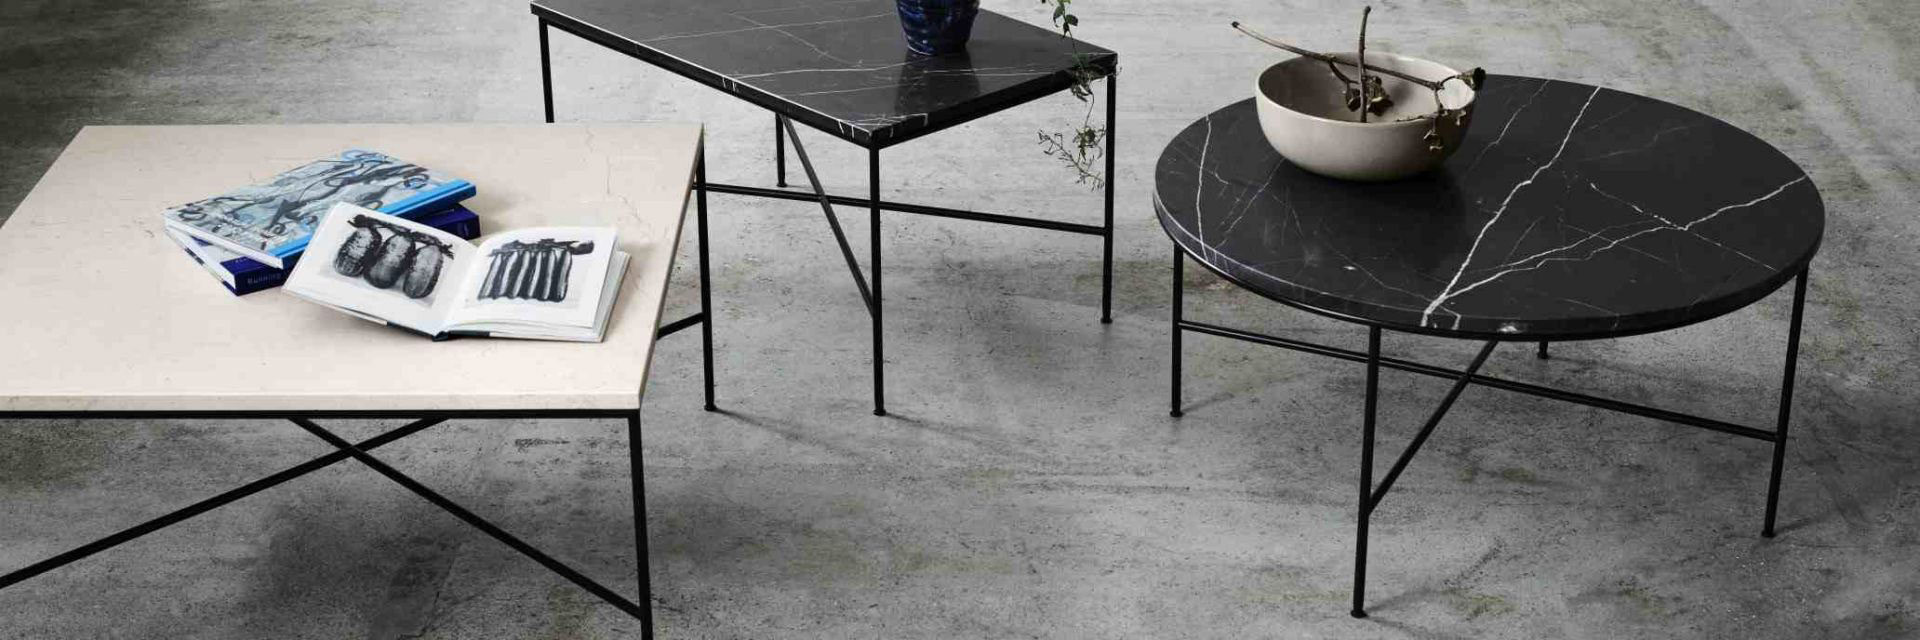 Tables basses scandinaves et design danois - Meilleurs prix